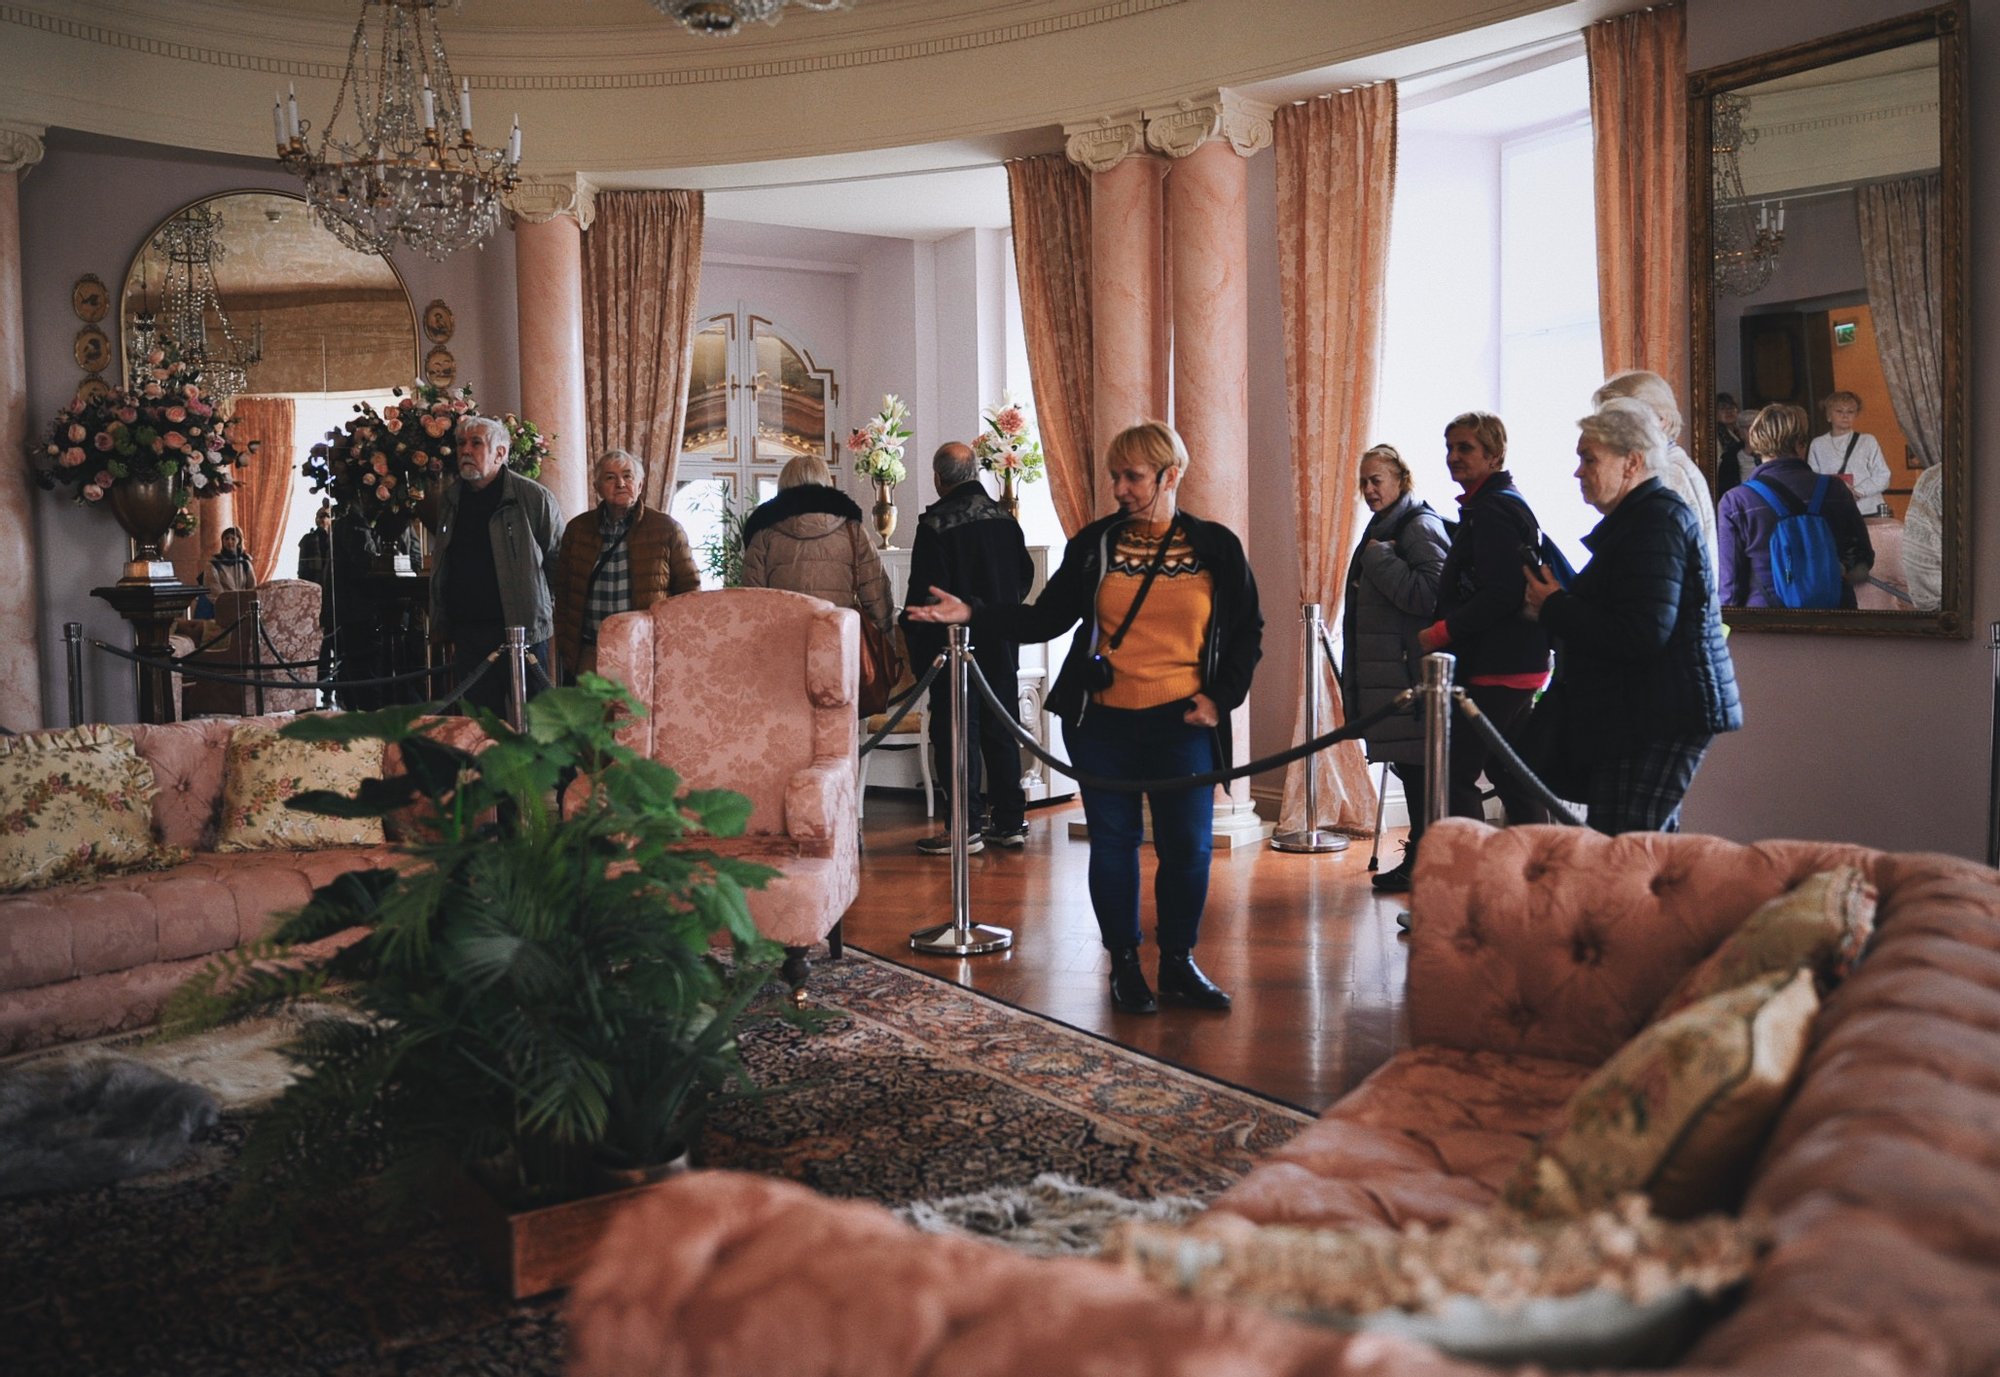 Kolorowa, pozioma fotografia. Grupa seniorów i seniorek zwiedza Zamek w Wałbrzychu. Na środku zdjęcia przewodniczka opowiada o meblach, które znajdują się  wobecnie oglądanym pomieszczeniu.